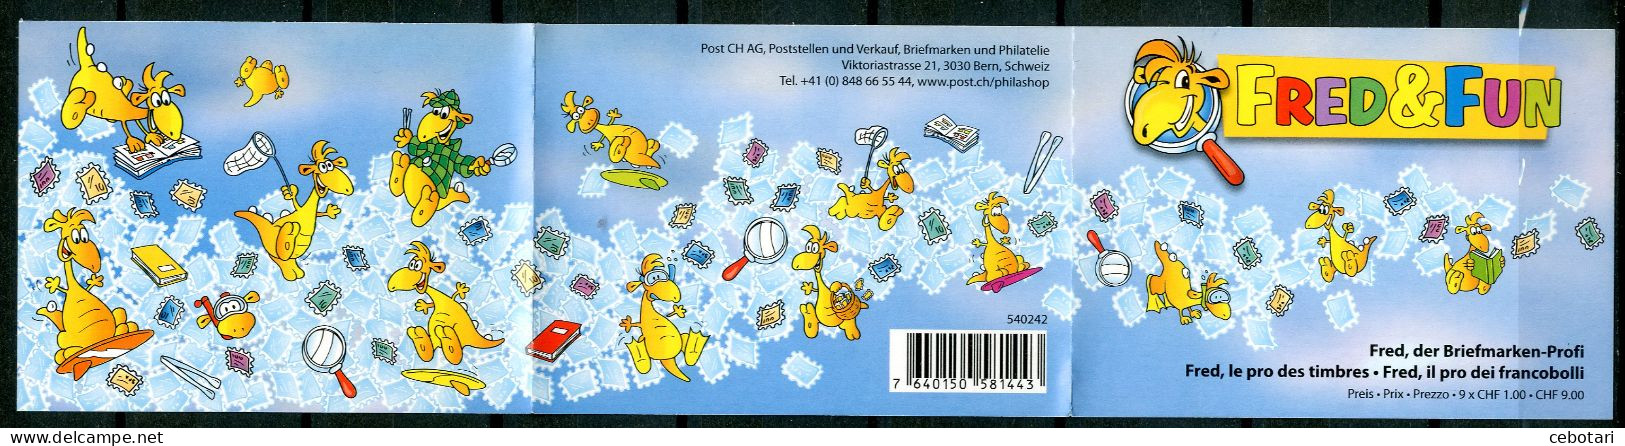 SVIZZERA / HELVETIA 2014** - Fred & Fun - Stamp Booklets - Markenheftchen